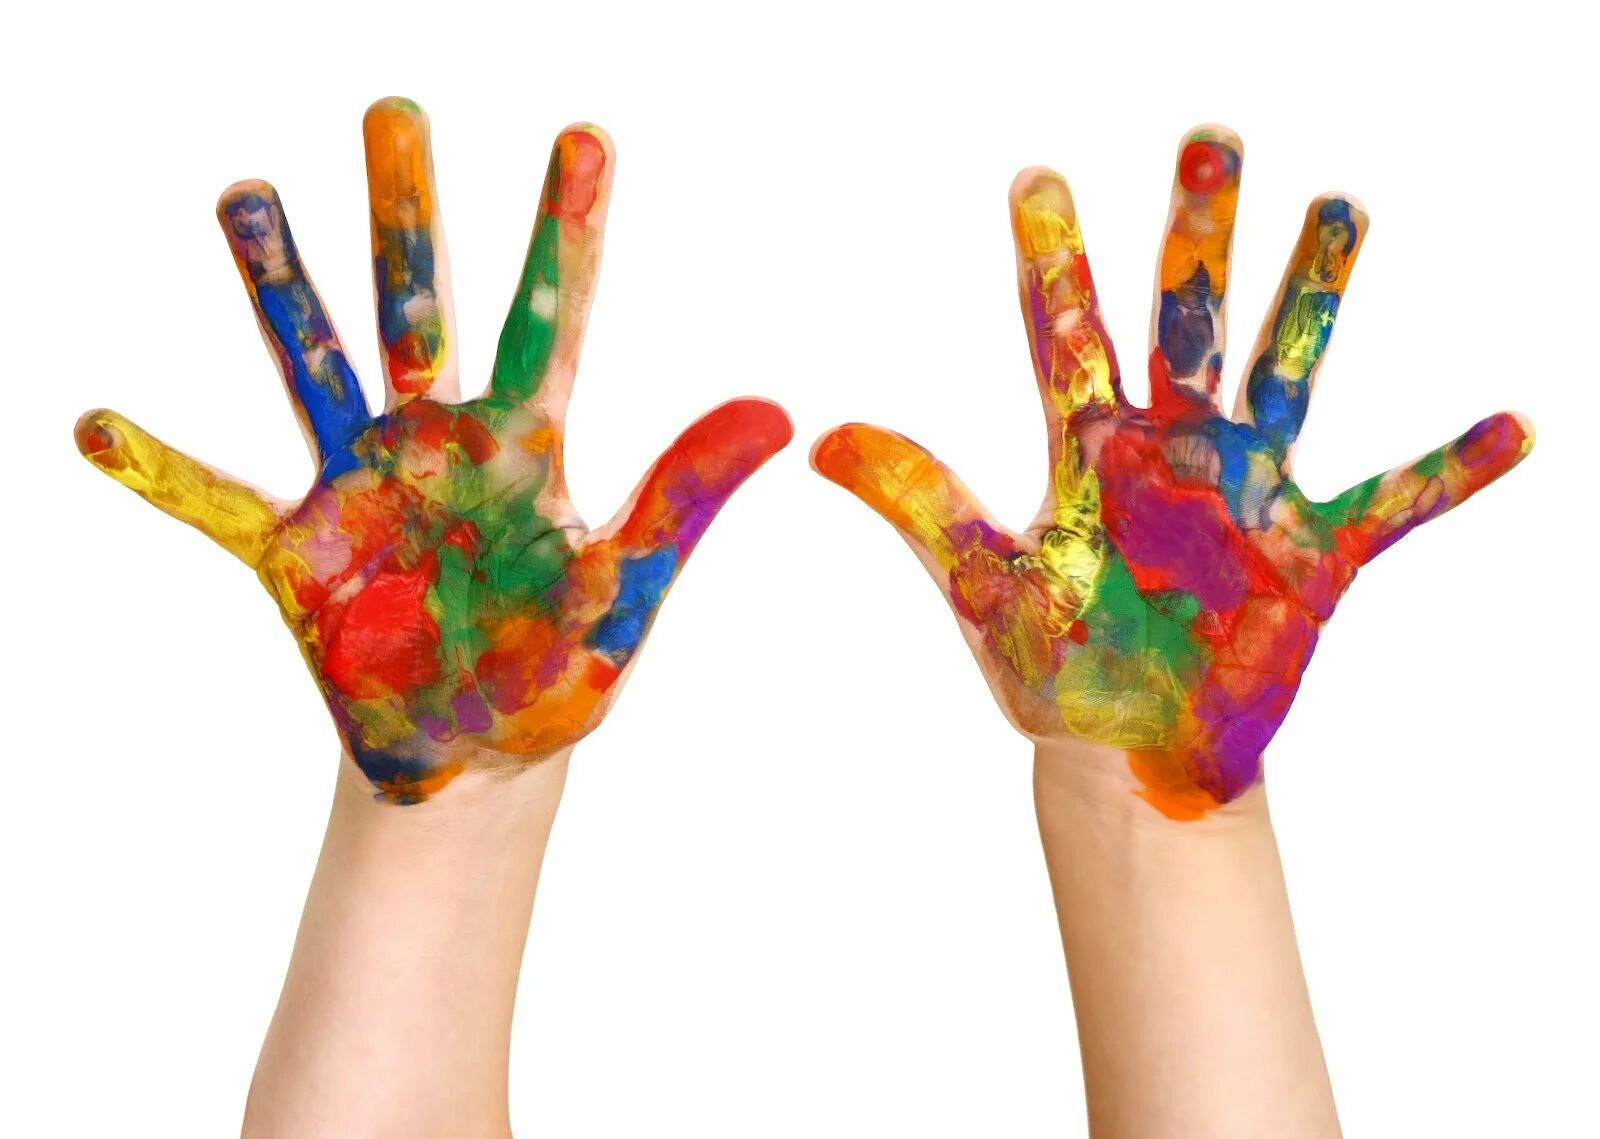 Colour children. Цветные ладони. Разноцветные руки. Детские ладршки вкраске. Разноцветные ладошки.